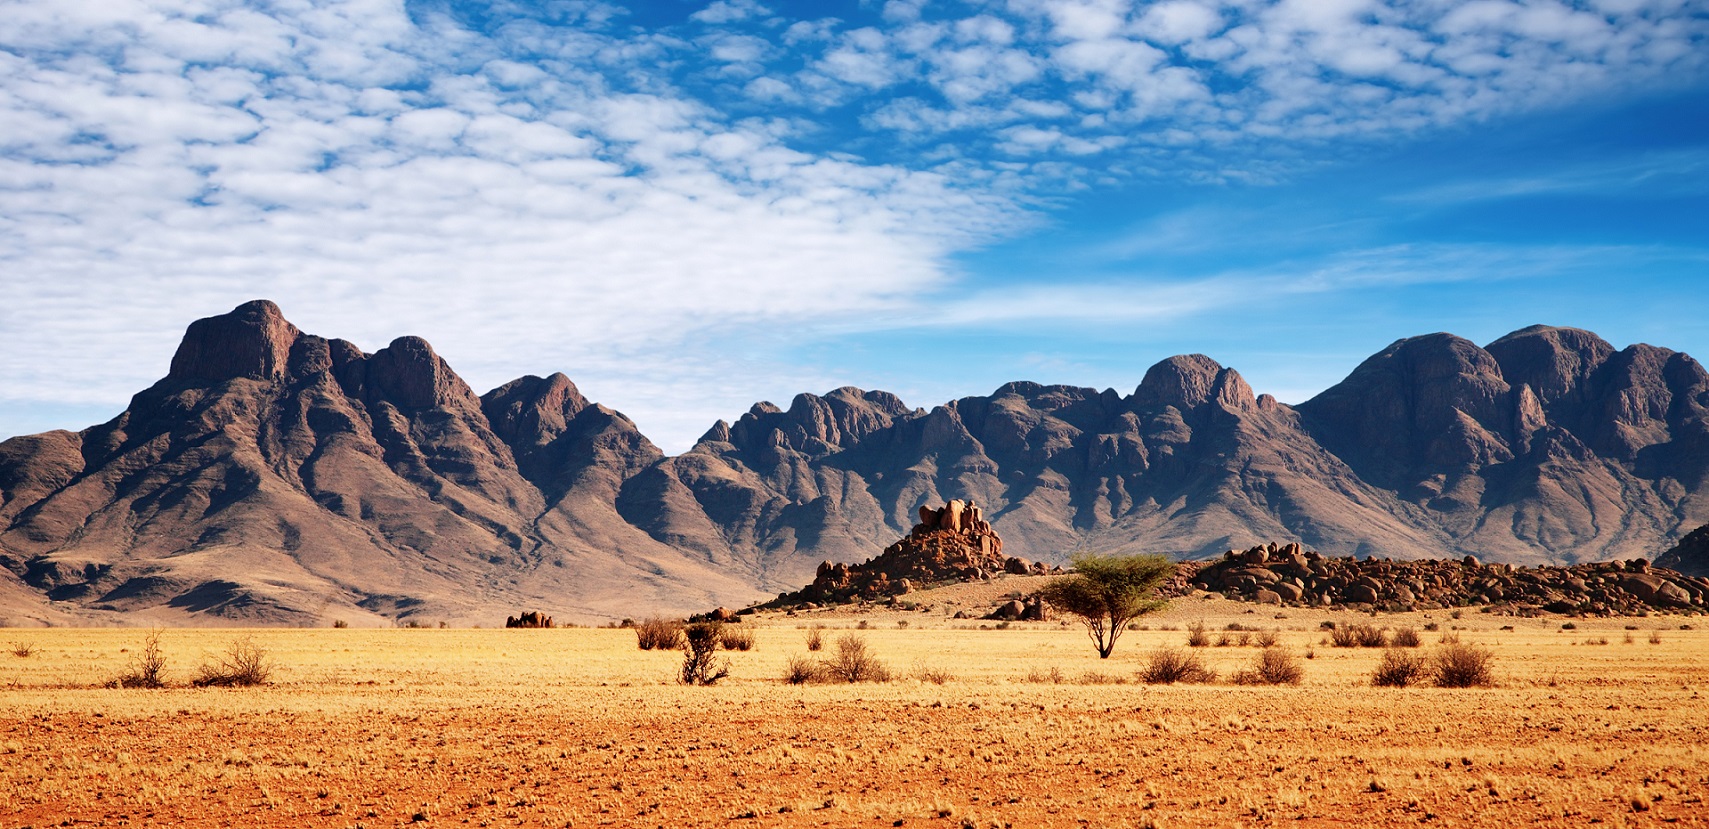 Namibia Shutterstock 1 - Turismo na África: 10 países imperdíveis que você precisa conhecer!